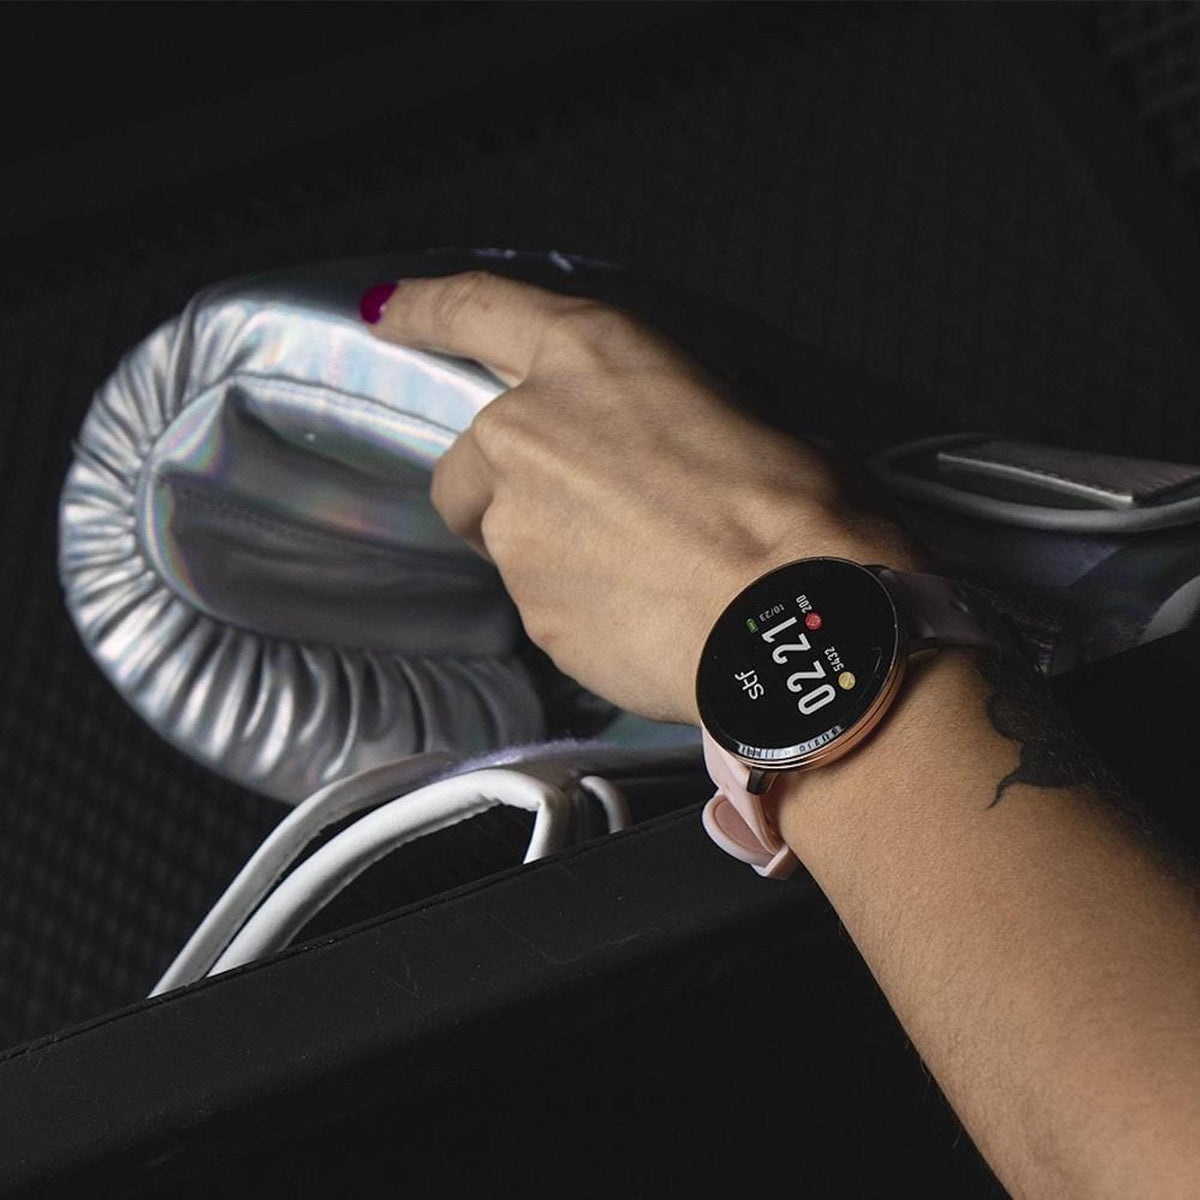 Stuffactory Reloj Inteligente Smartwatch Kronos Sport - vertikal